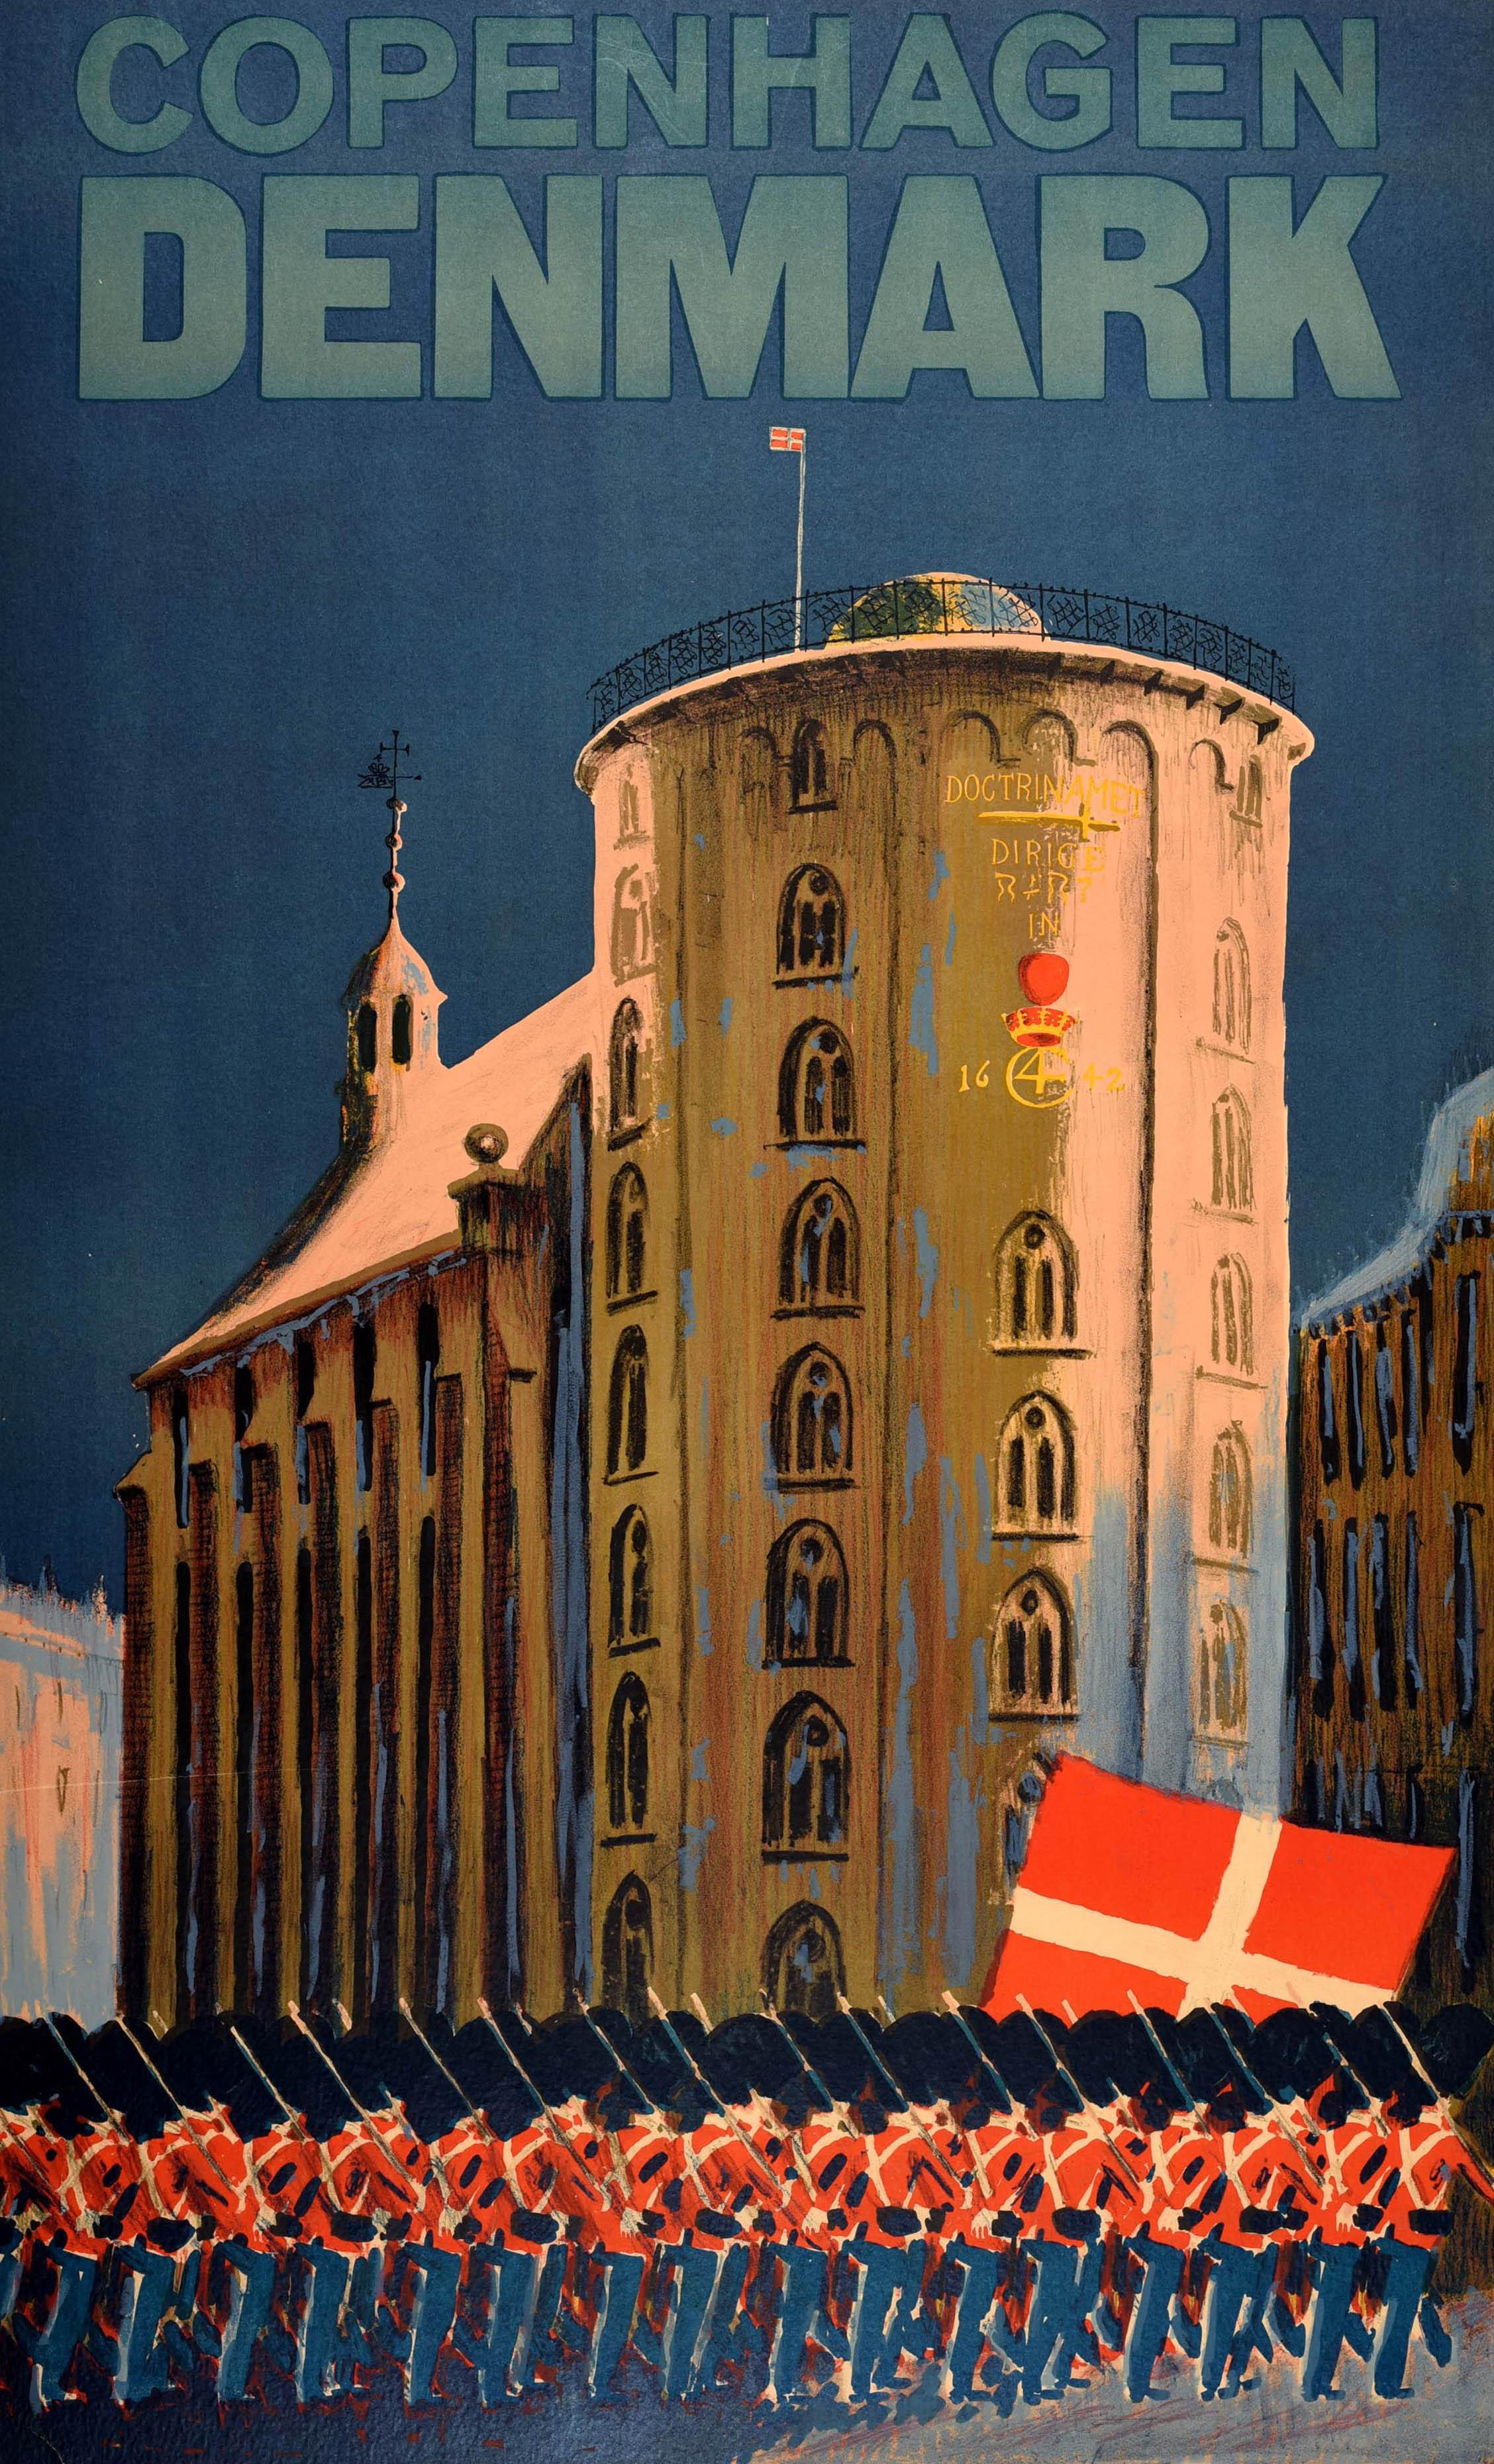 Affiche de voyage originale pour Copenhague, Danemark, représentant des soldats de la Garde royale défilant avec un drapeau danois à croix rouge et blanche devant l'observatoire astronomique Rundetaarn / Round Tower du XVIIe siècle et la chapelle